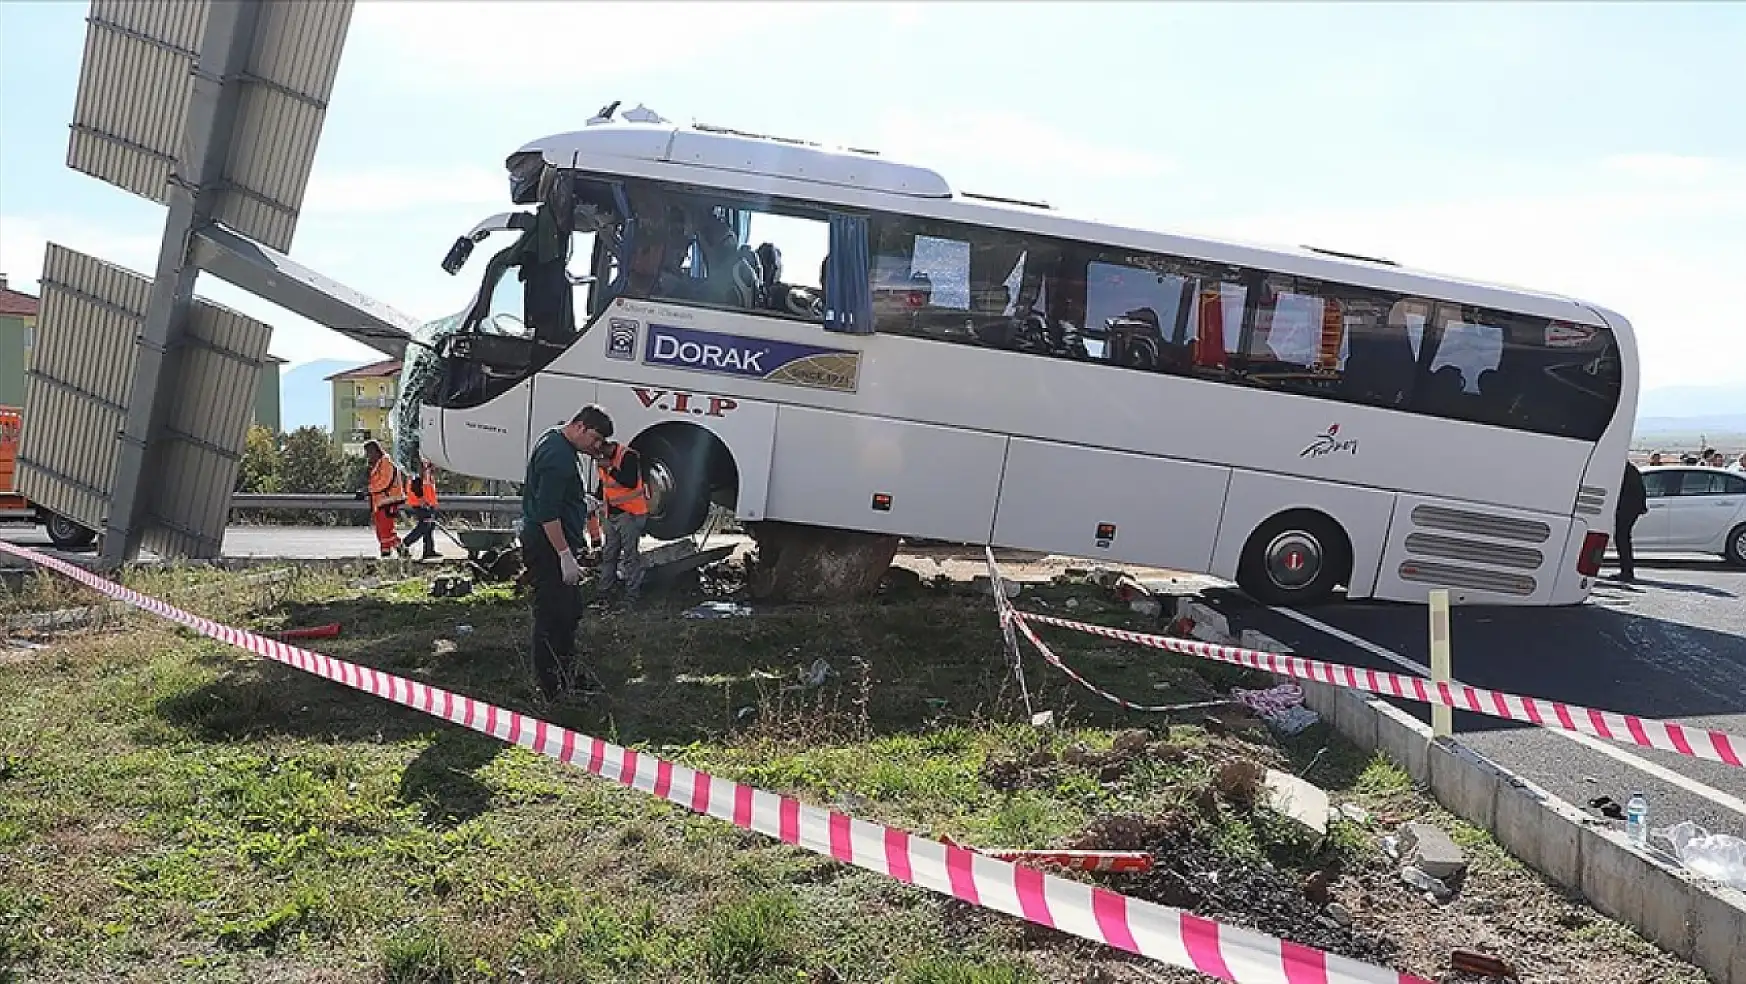 Denizli'de turistleri taşıyan otobüs kaza geçirdi: 30 yaralı!